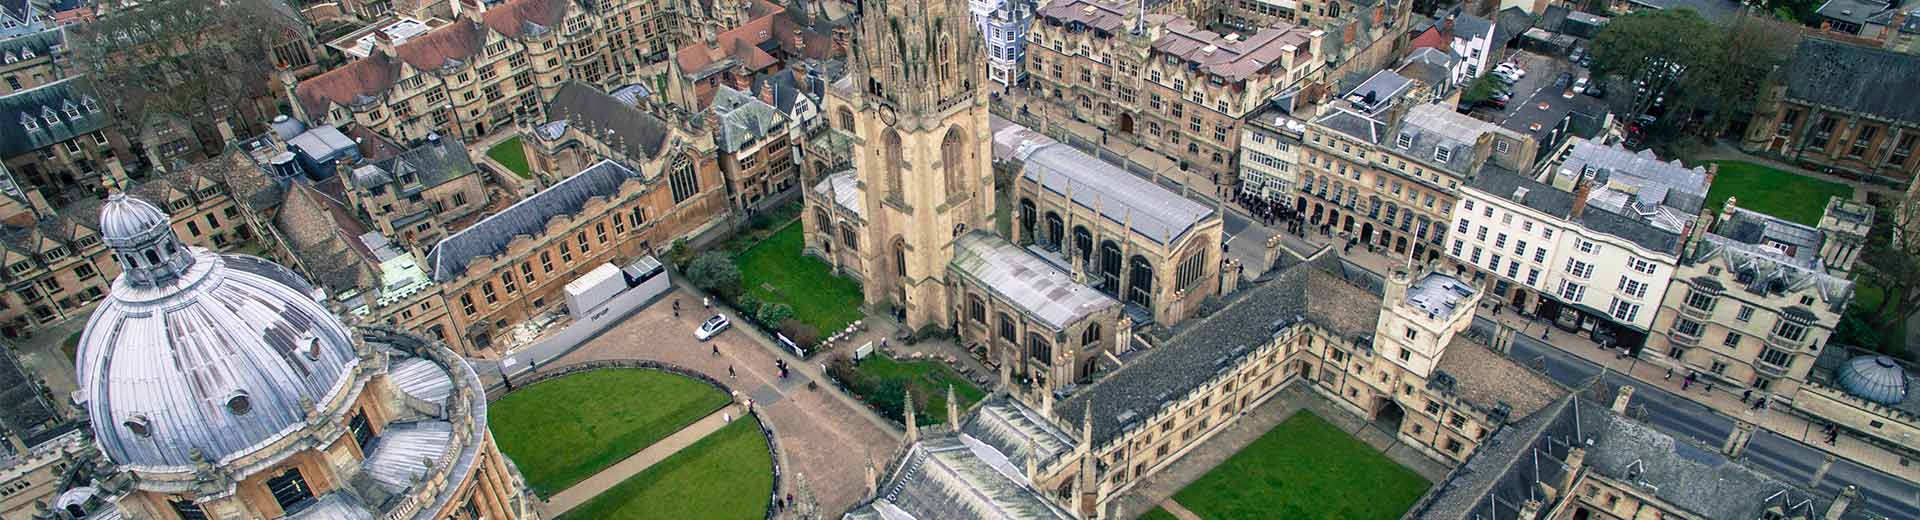 Beautiful Oxford University